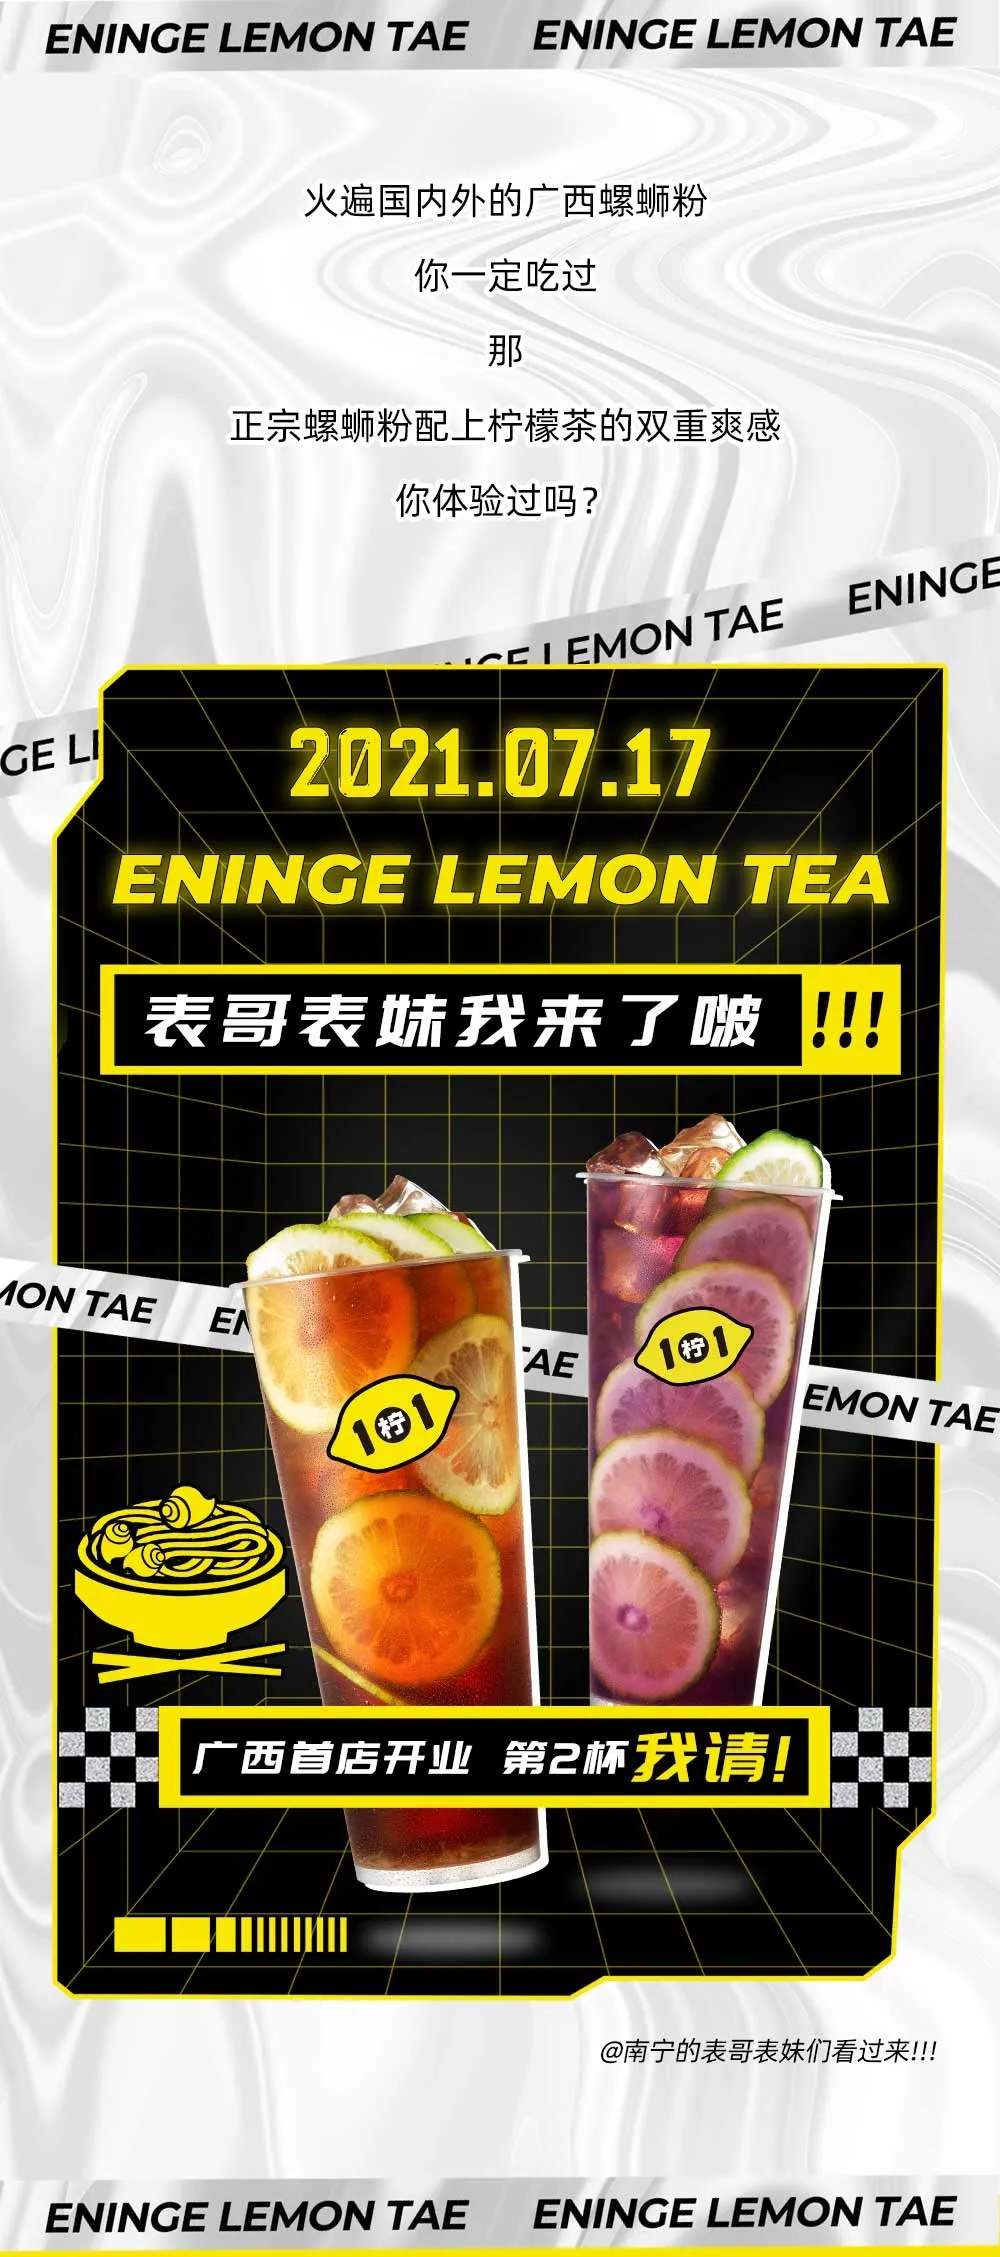 广州1柠1柠檬茶官网